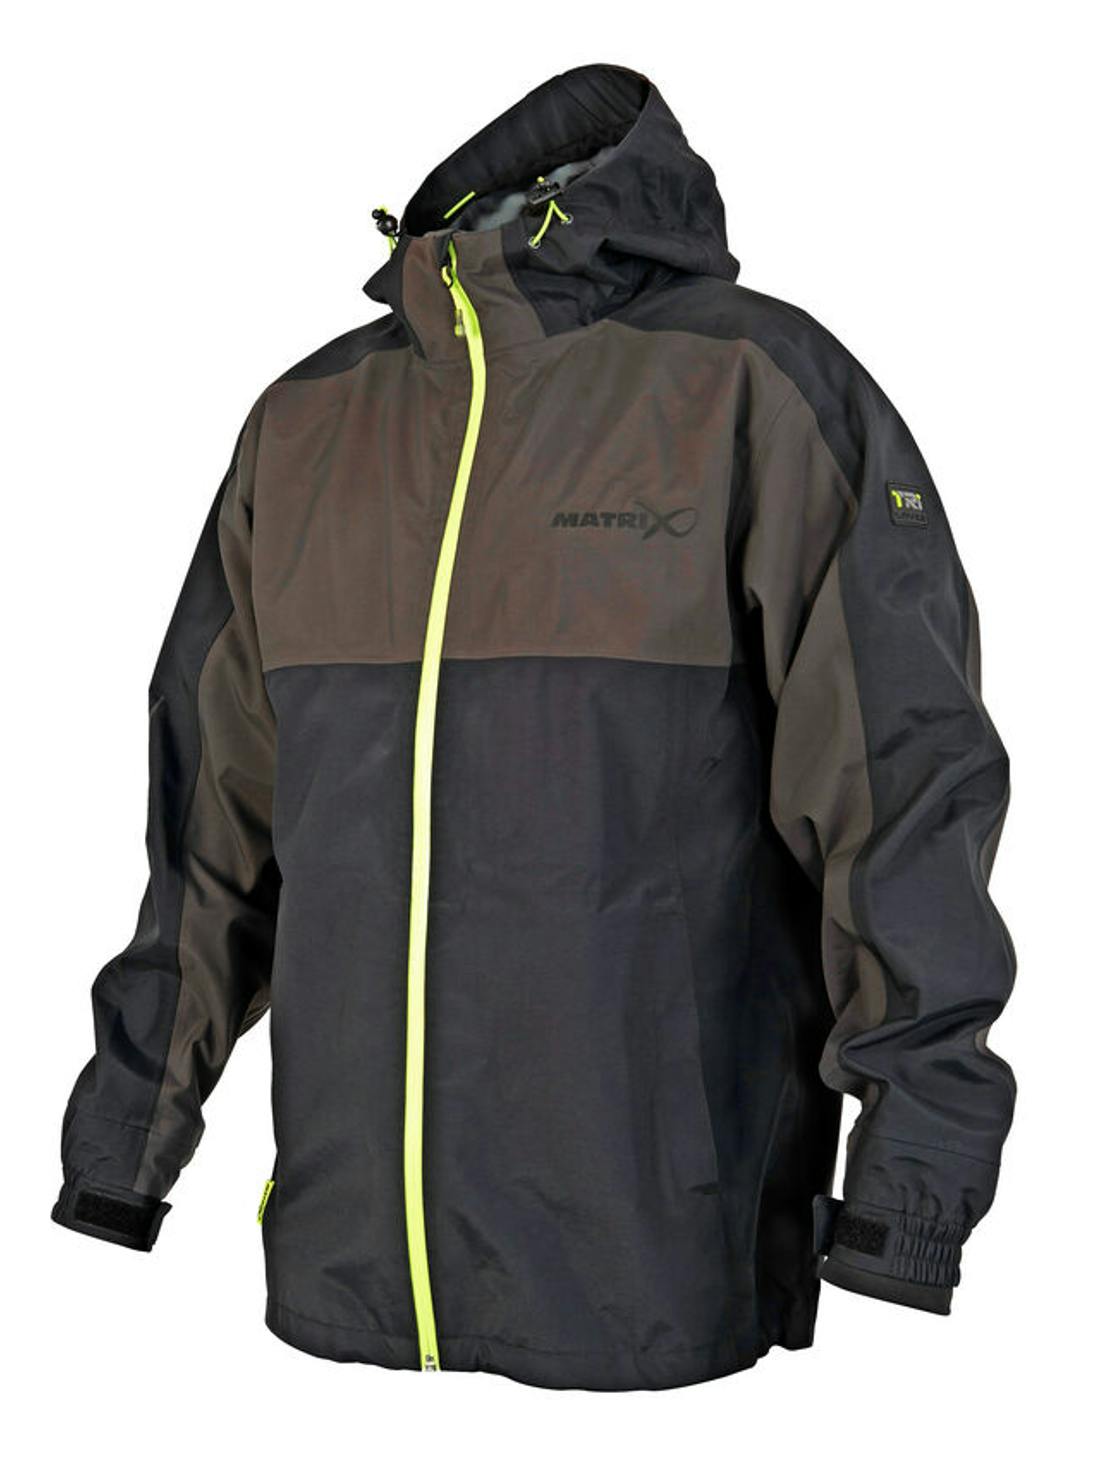 20000mm W/proof Jacket Bib & Brace Maver MV-R 20 Waterproof Clothing 